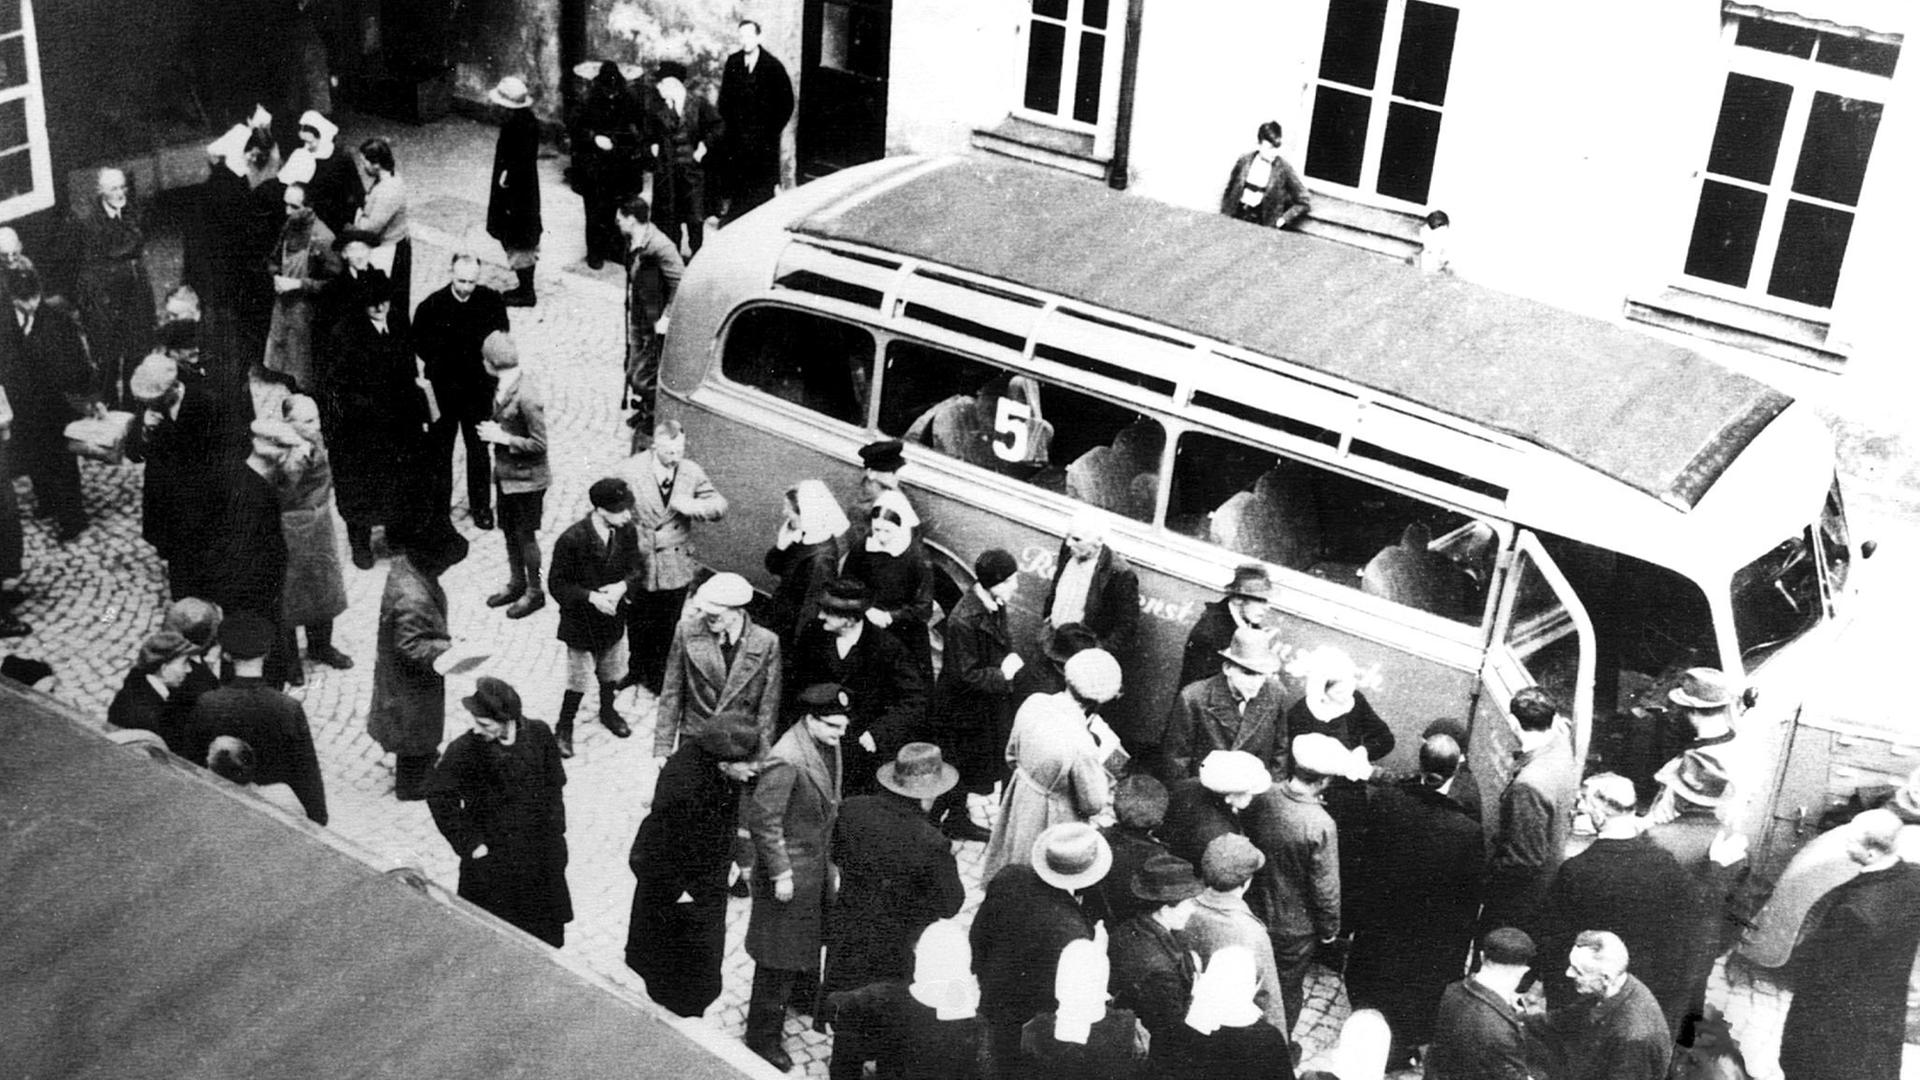 Patienten der Diakonissenanstalt Bruckberg (Landkreis Ansbach) in Bayern wurden während der NS-Zeit in staatliche Heilanstalten und von dort aus in Tötungsanstalten transportiert. Die bayerischen Heil- und Pflegeanstalten waren in das Euthanasie-Programm der Nazis verstrickt. Tausende psychisch Kranke und geistig Behinderte wurden ermordet.